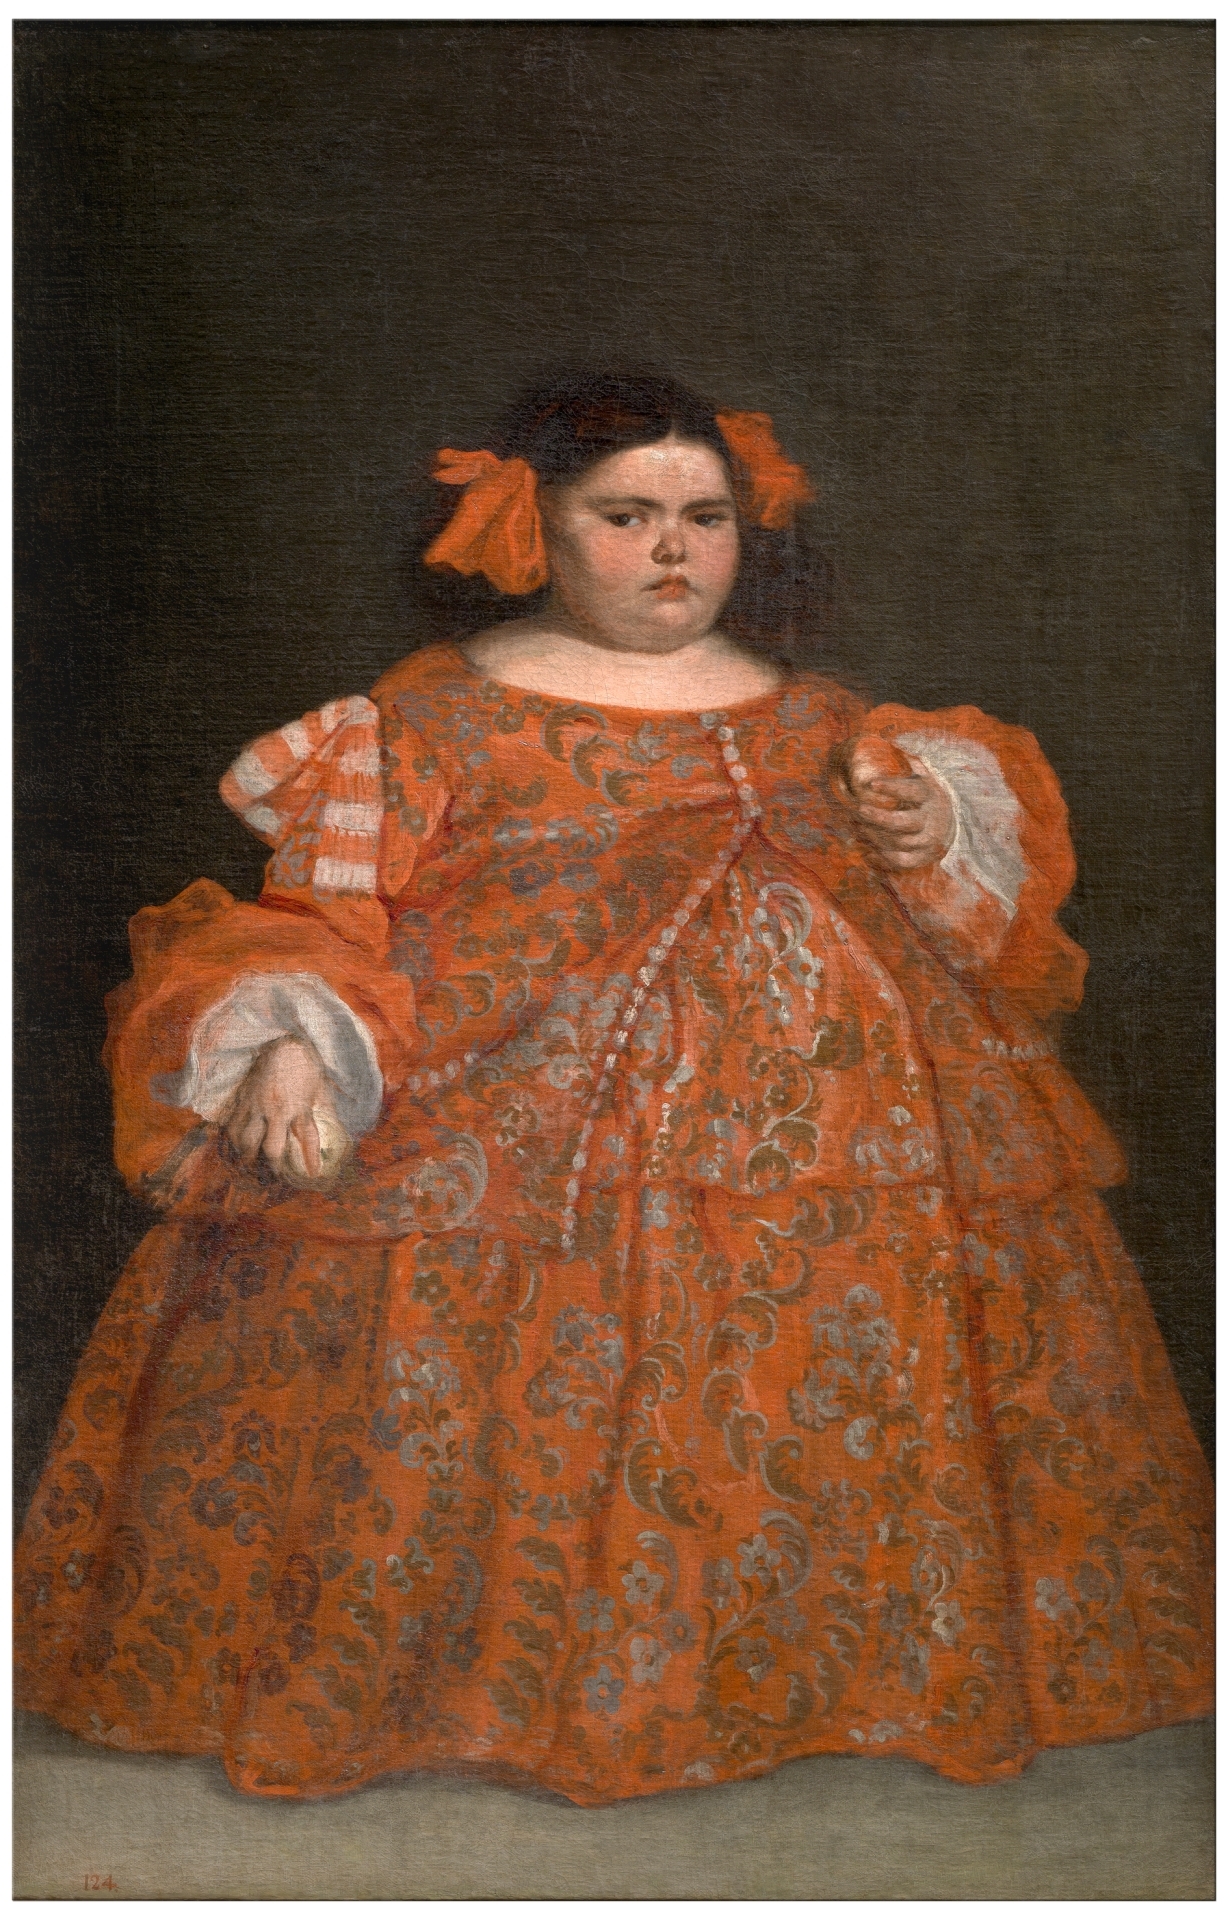 उजेनिआ  मार्टíनेज़  वललेजो कपड़ों में by Juan Carreño de Miranda - c. 1680 - 165 x 107 cm 